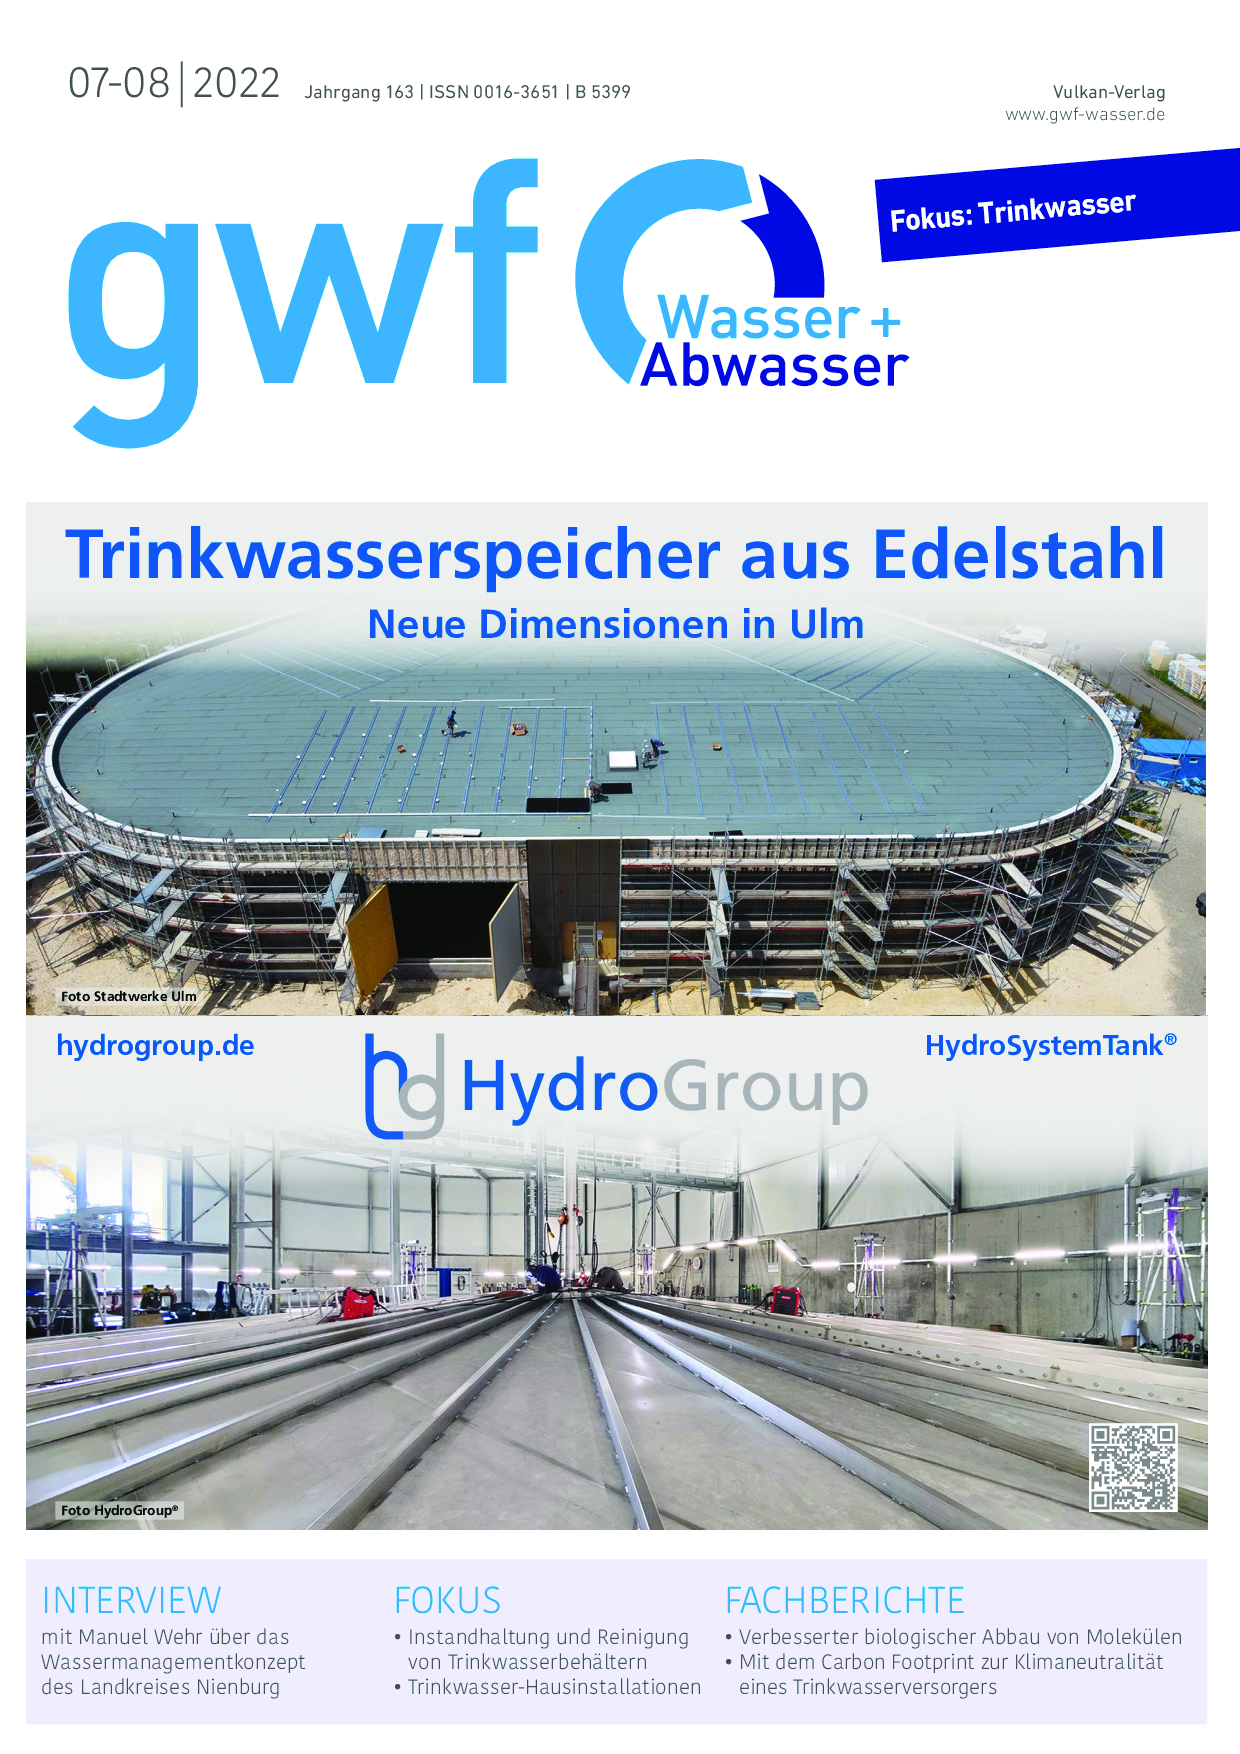 gwf - Wasser|Abwasser - 07-08 2022